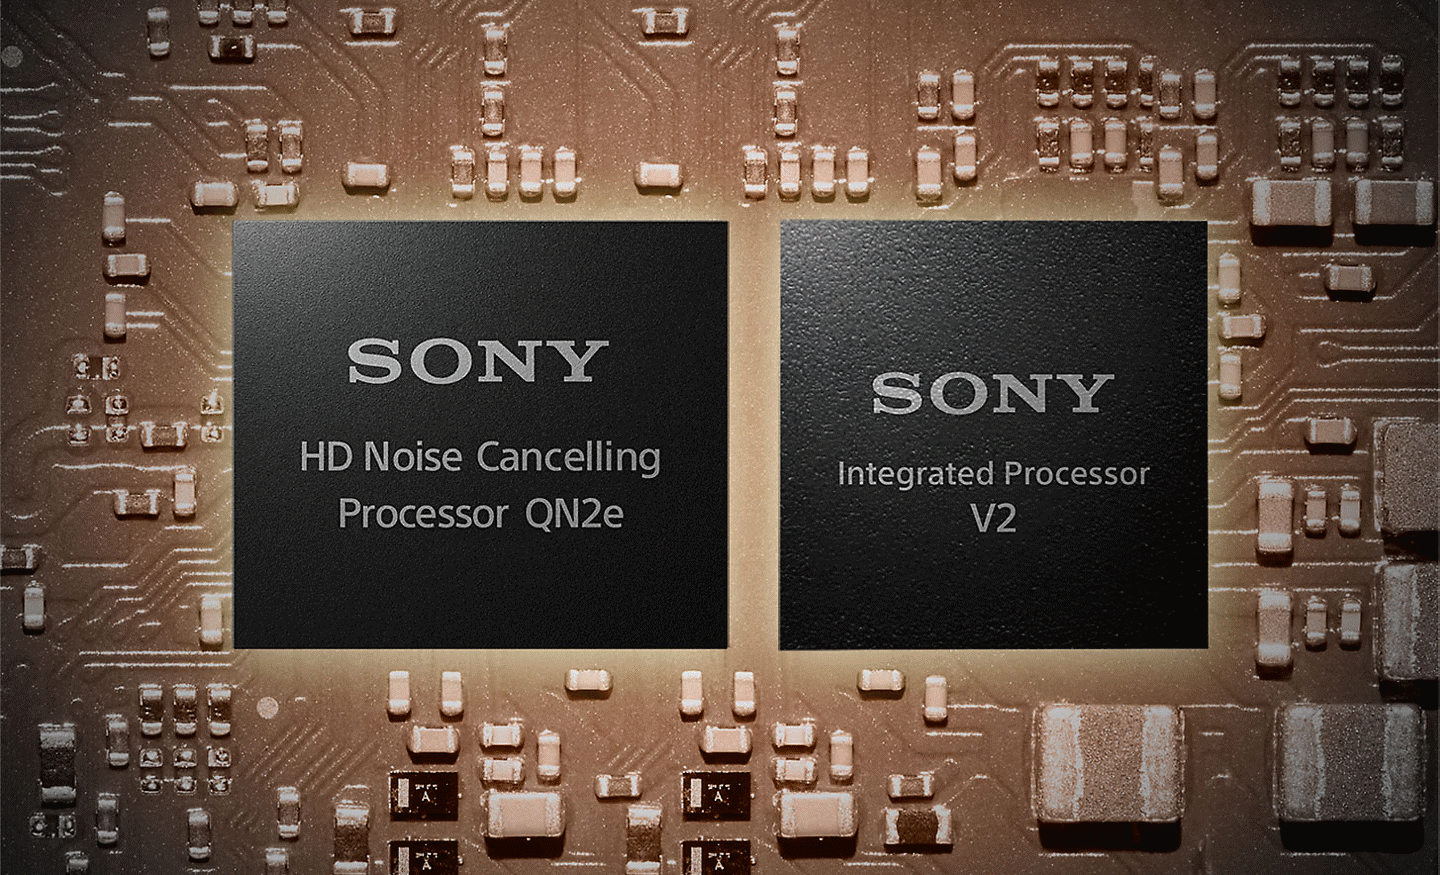 Hình ảnh hai bộ xử lý trên bo mạch chủ, bên trái là bộ xử lý chống ồn HD còn bên phải là bộ xử lý tích hợp V2